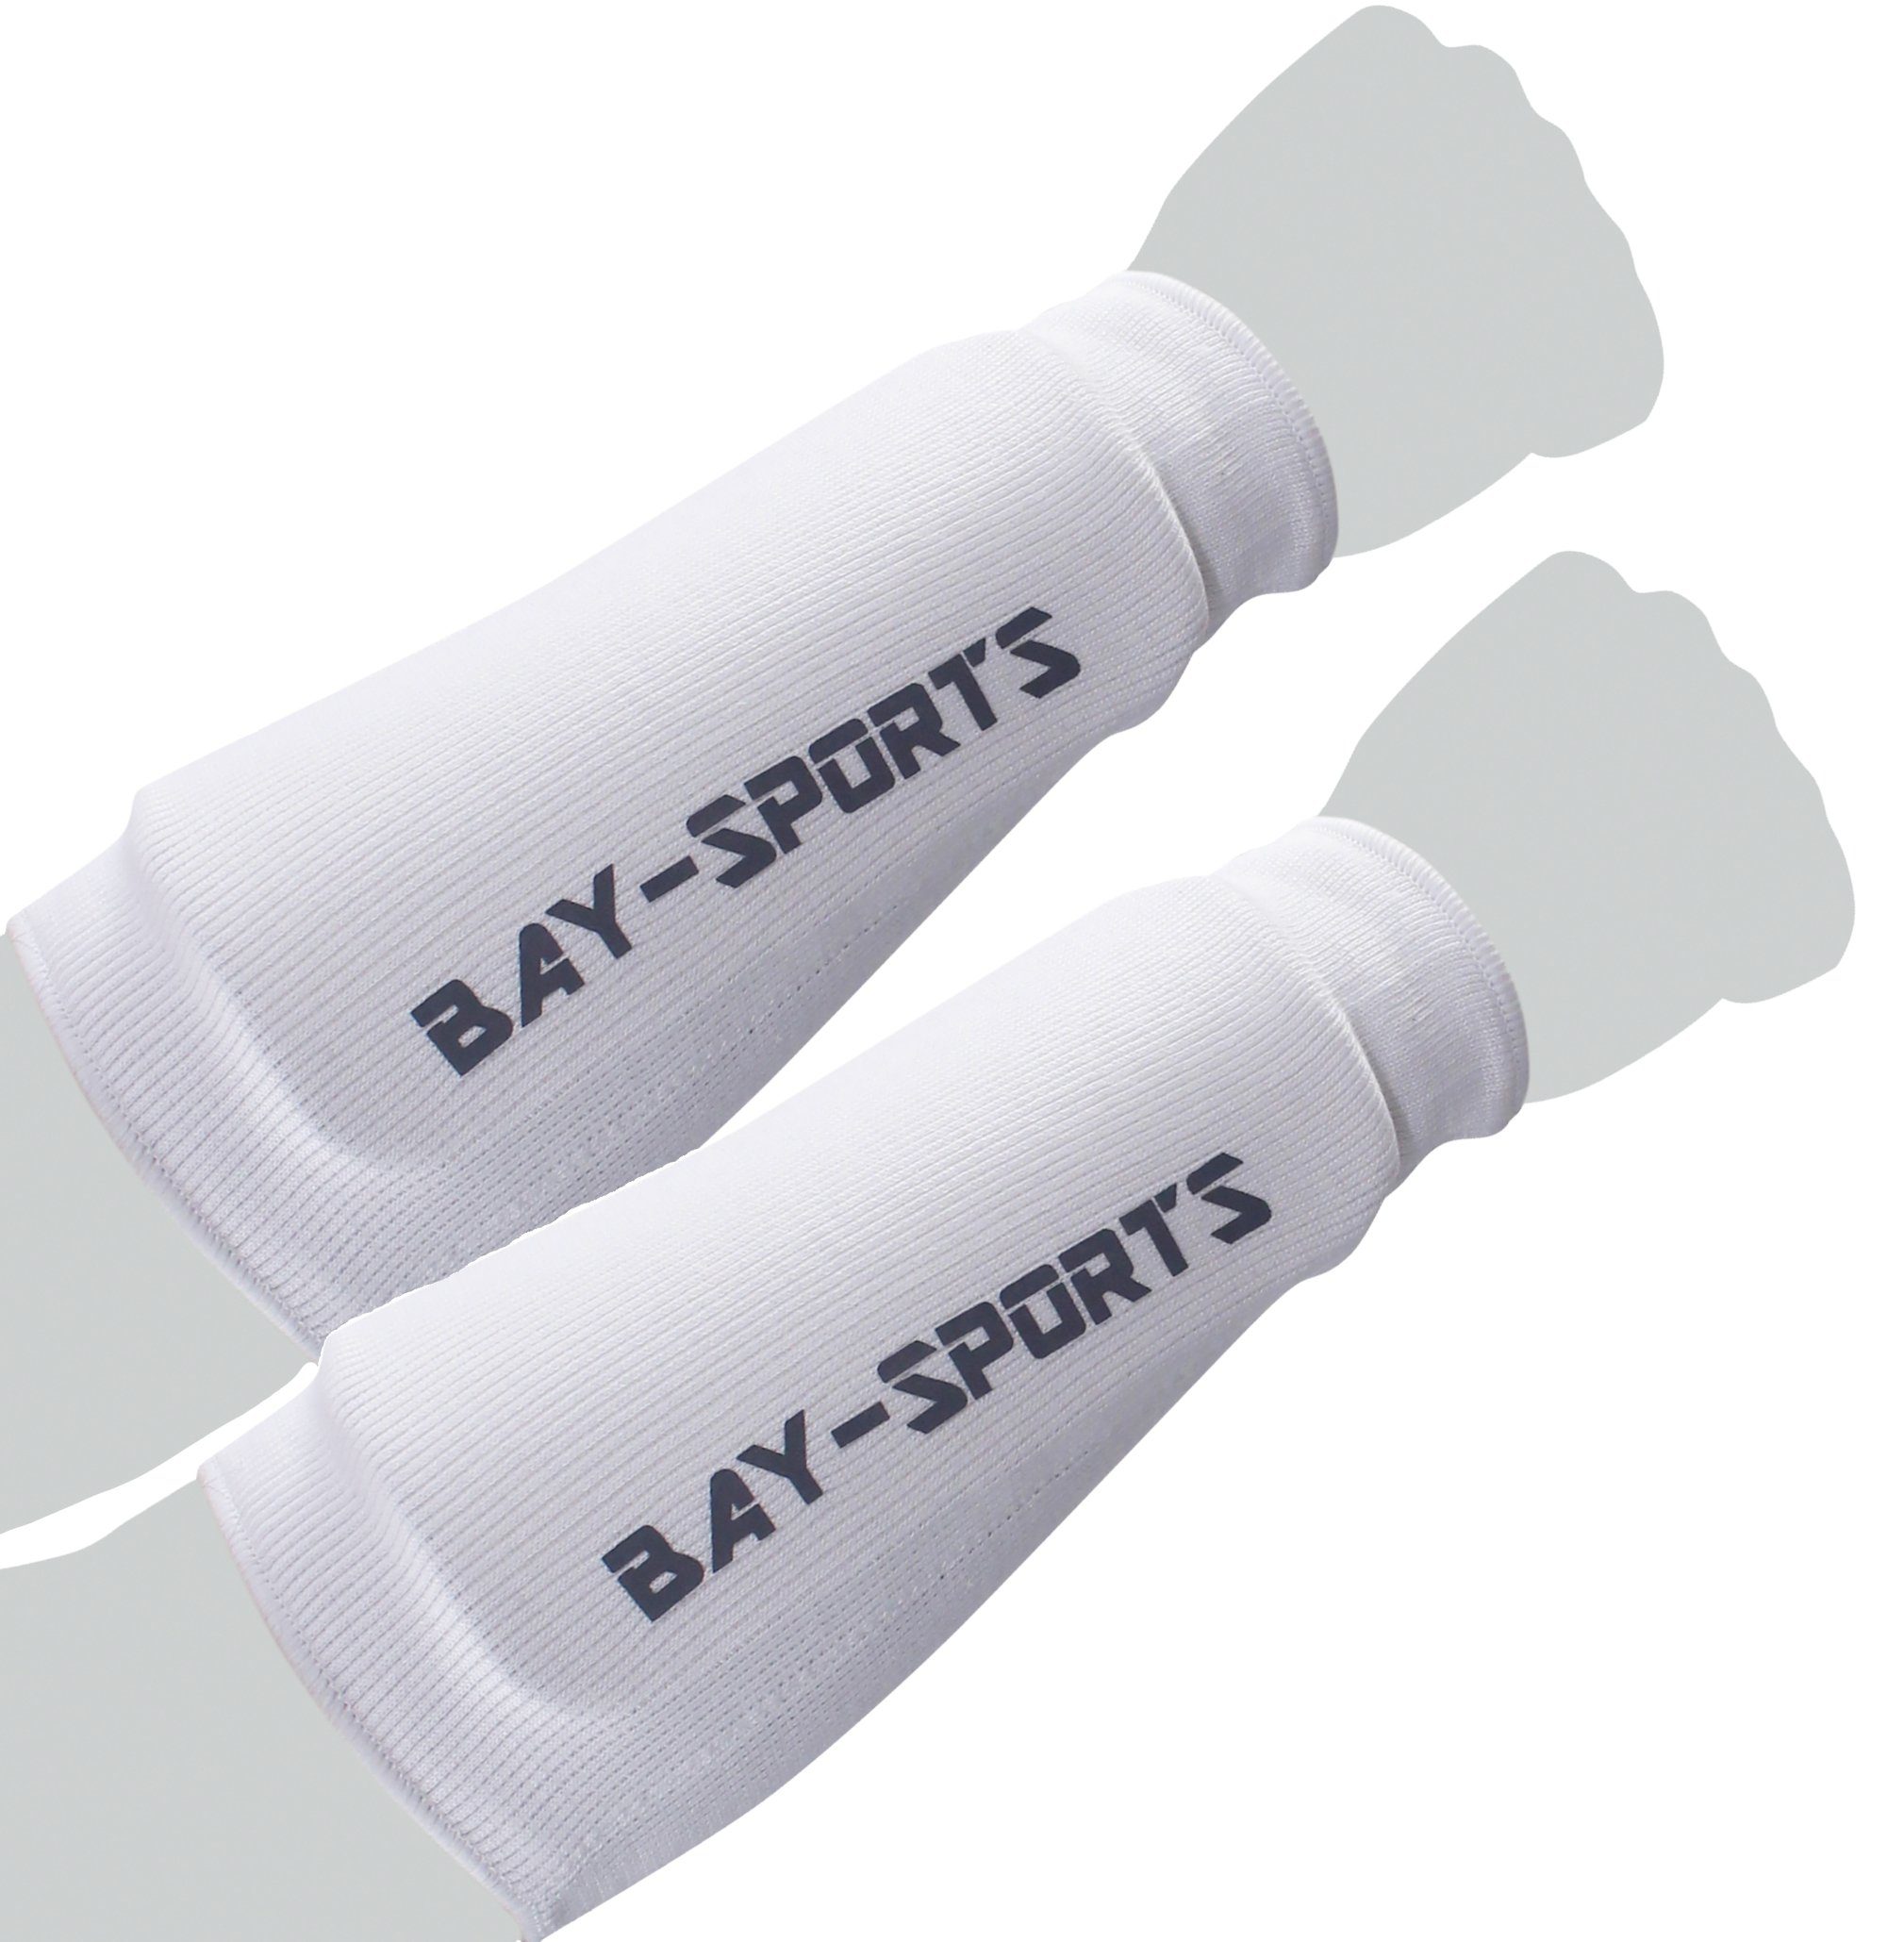 BAY-Sports Armschoner Unterarmschutz Unterarmschoner Unterarmschützer Unterarm IUM, Baumwolle, Waschmaschinenfest, Dauerelastisch, XS - XL